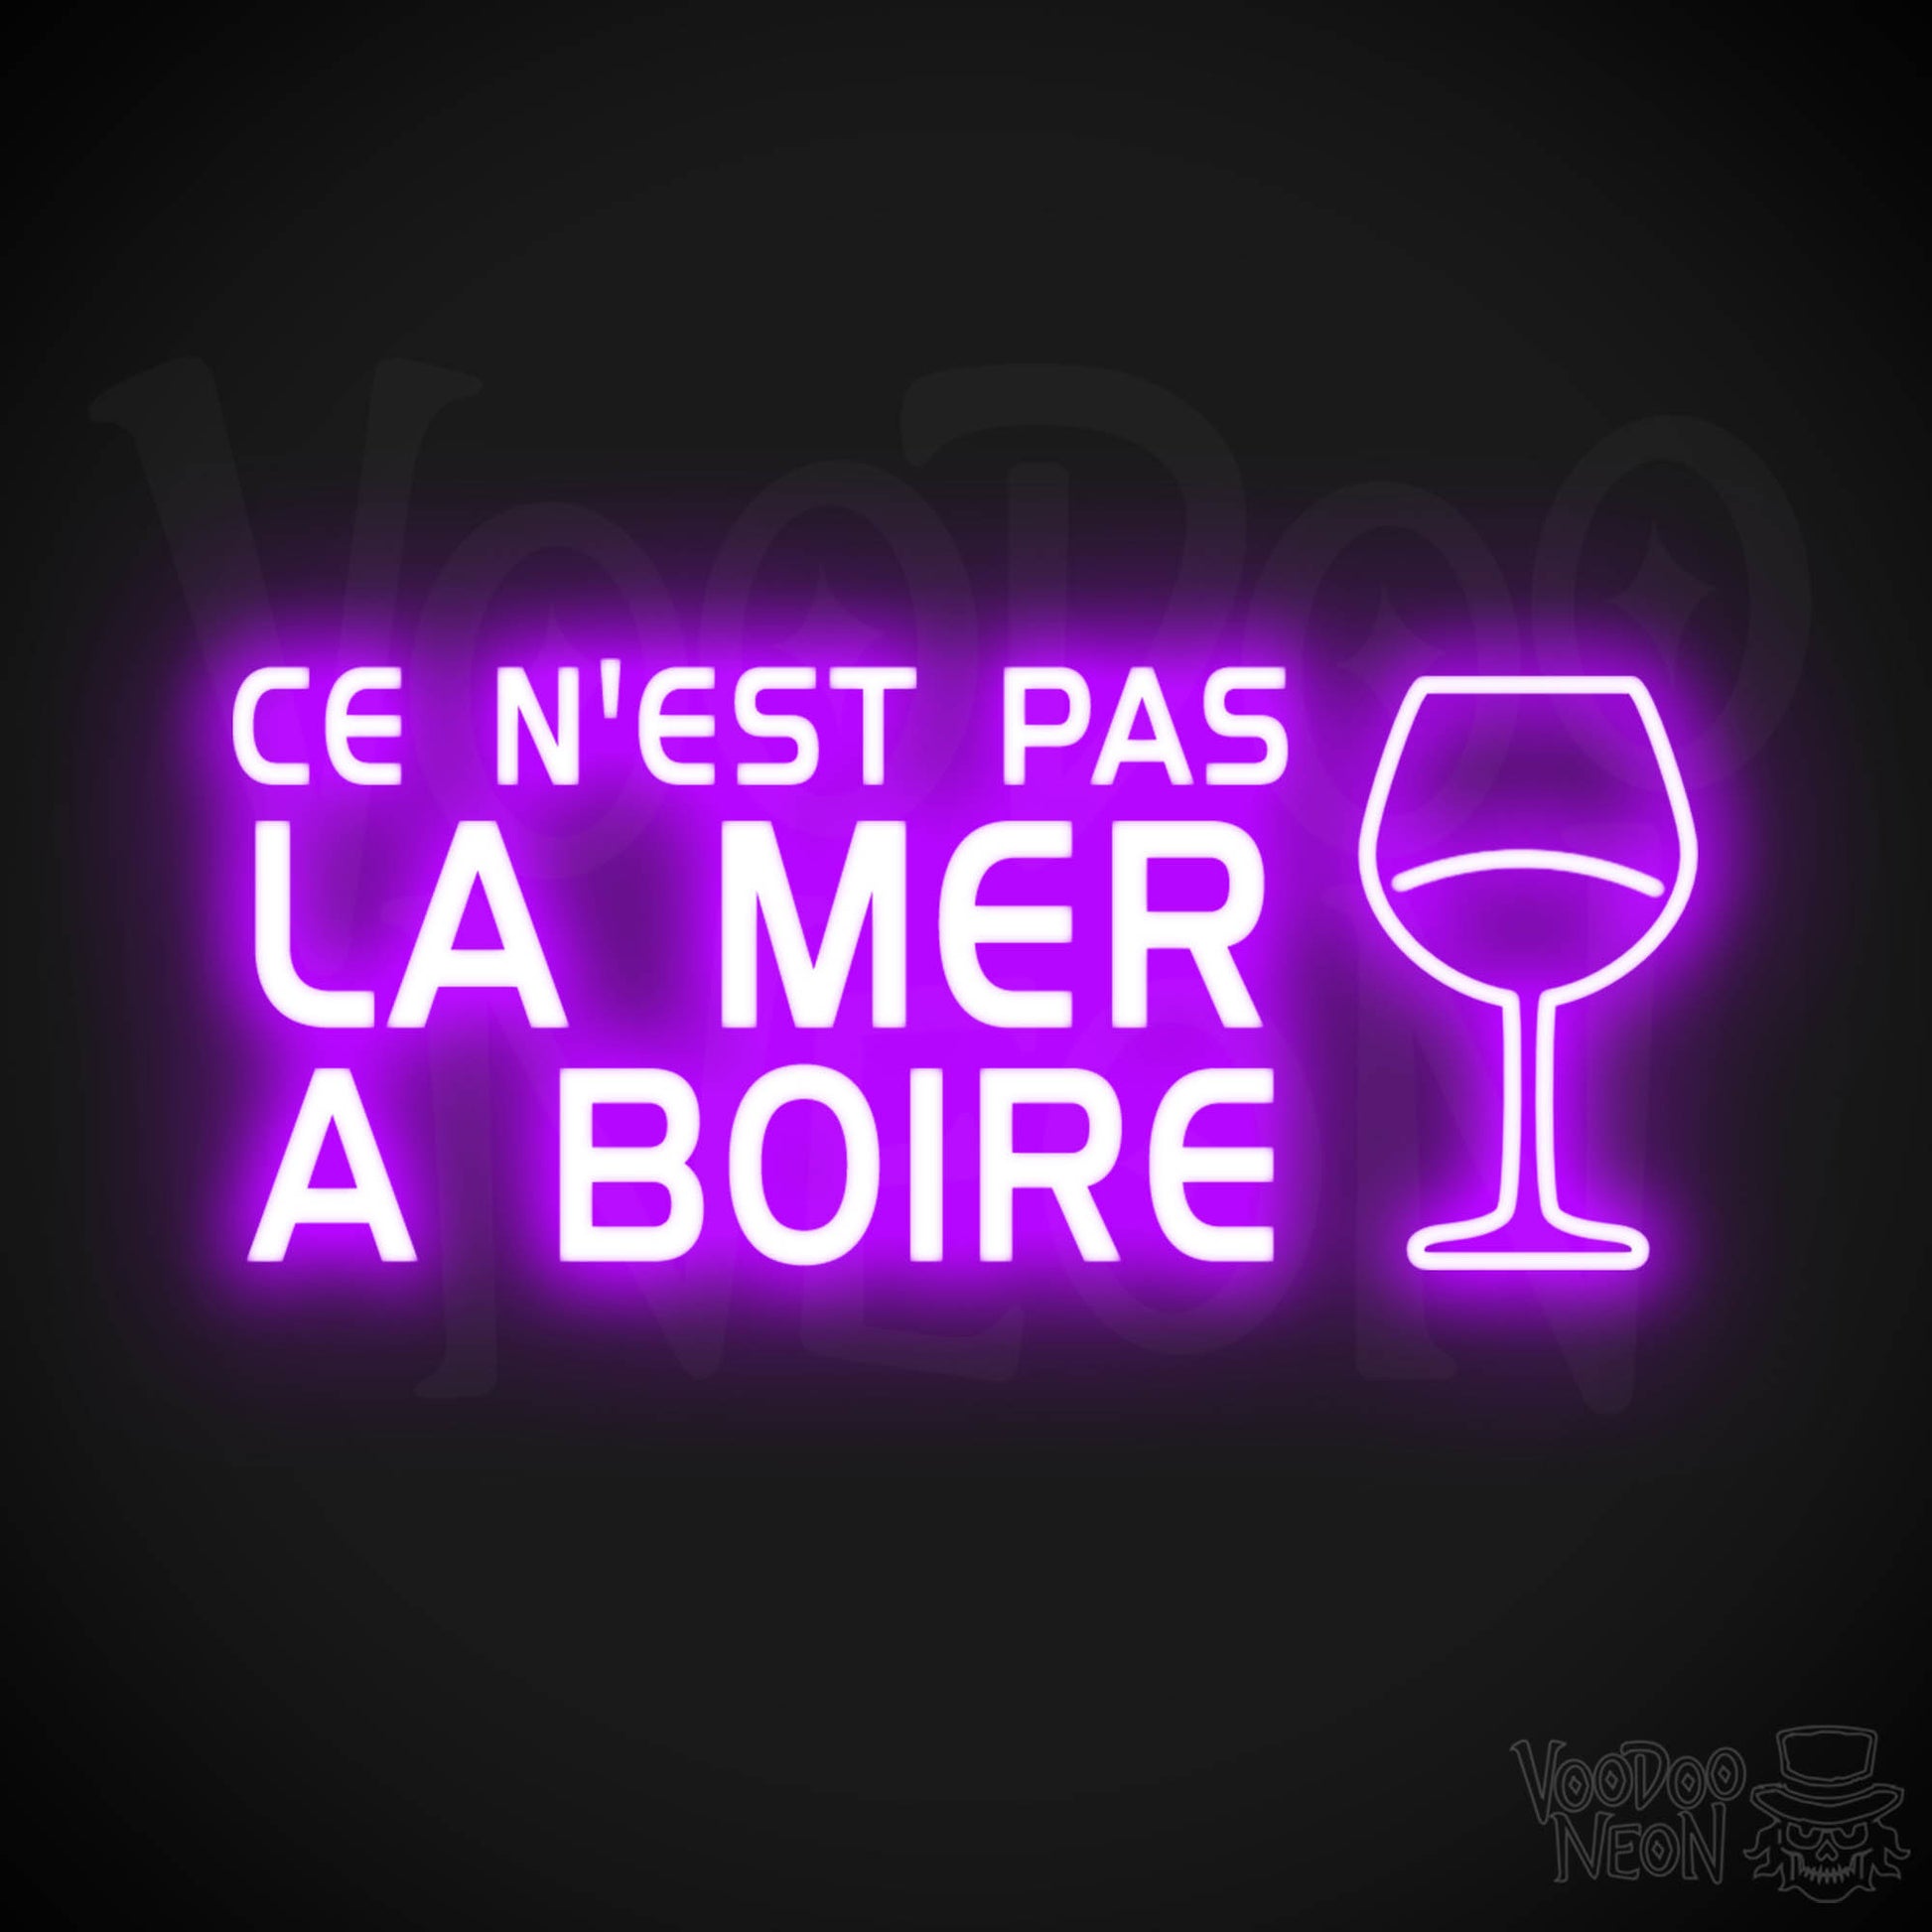 Ce N'est Pas La Mer a Boire Neon Sign - LED Lights - Color Purple